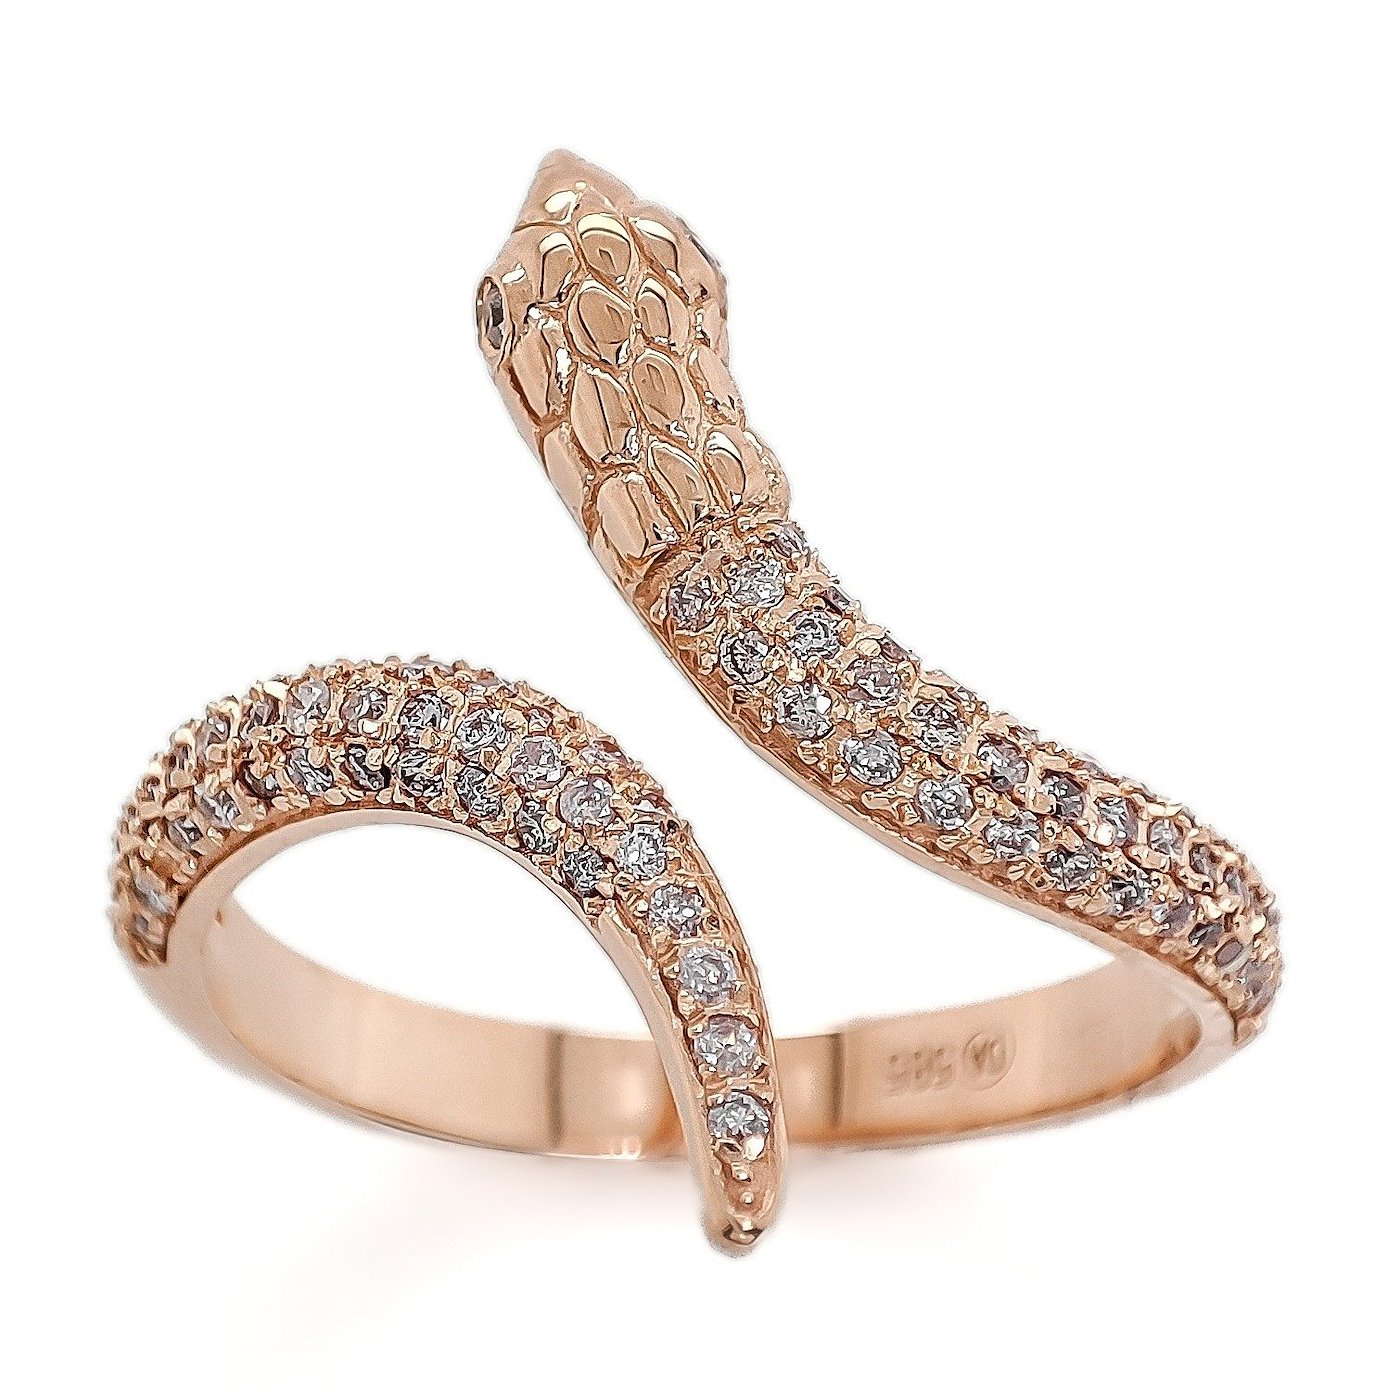 .. - Designový prsten s 0,42 ct Pink Diamanty,růžové zlato 585/1000, značeno platnou puncovní značkou "labuť", hrubá hmotnost 3,78 g